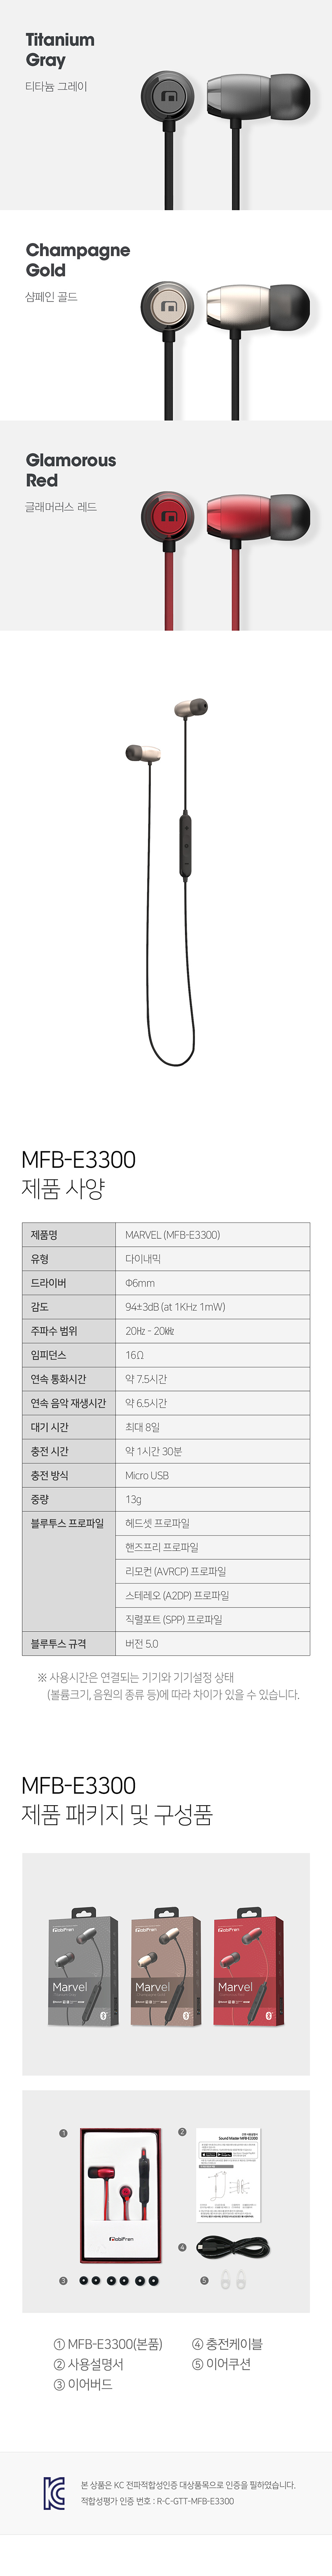 MFB-E3300_info_s_790.jpg